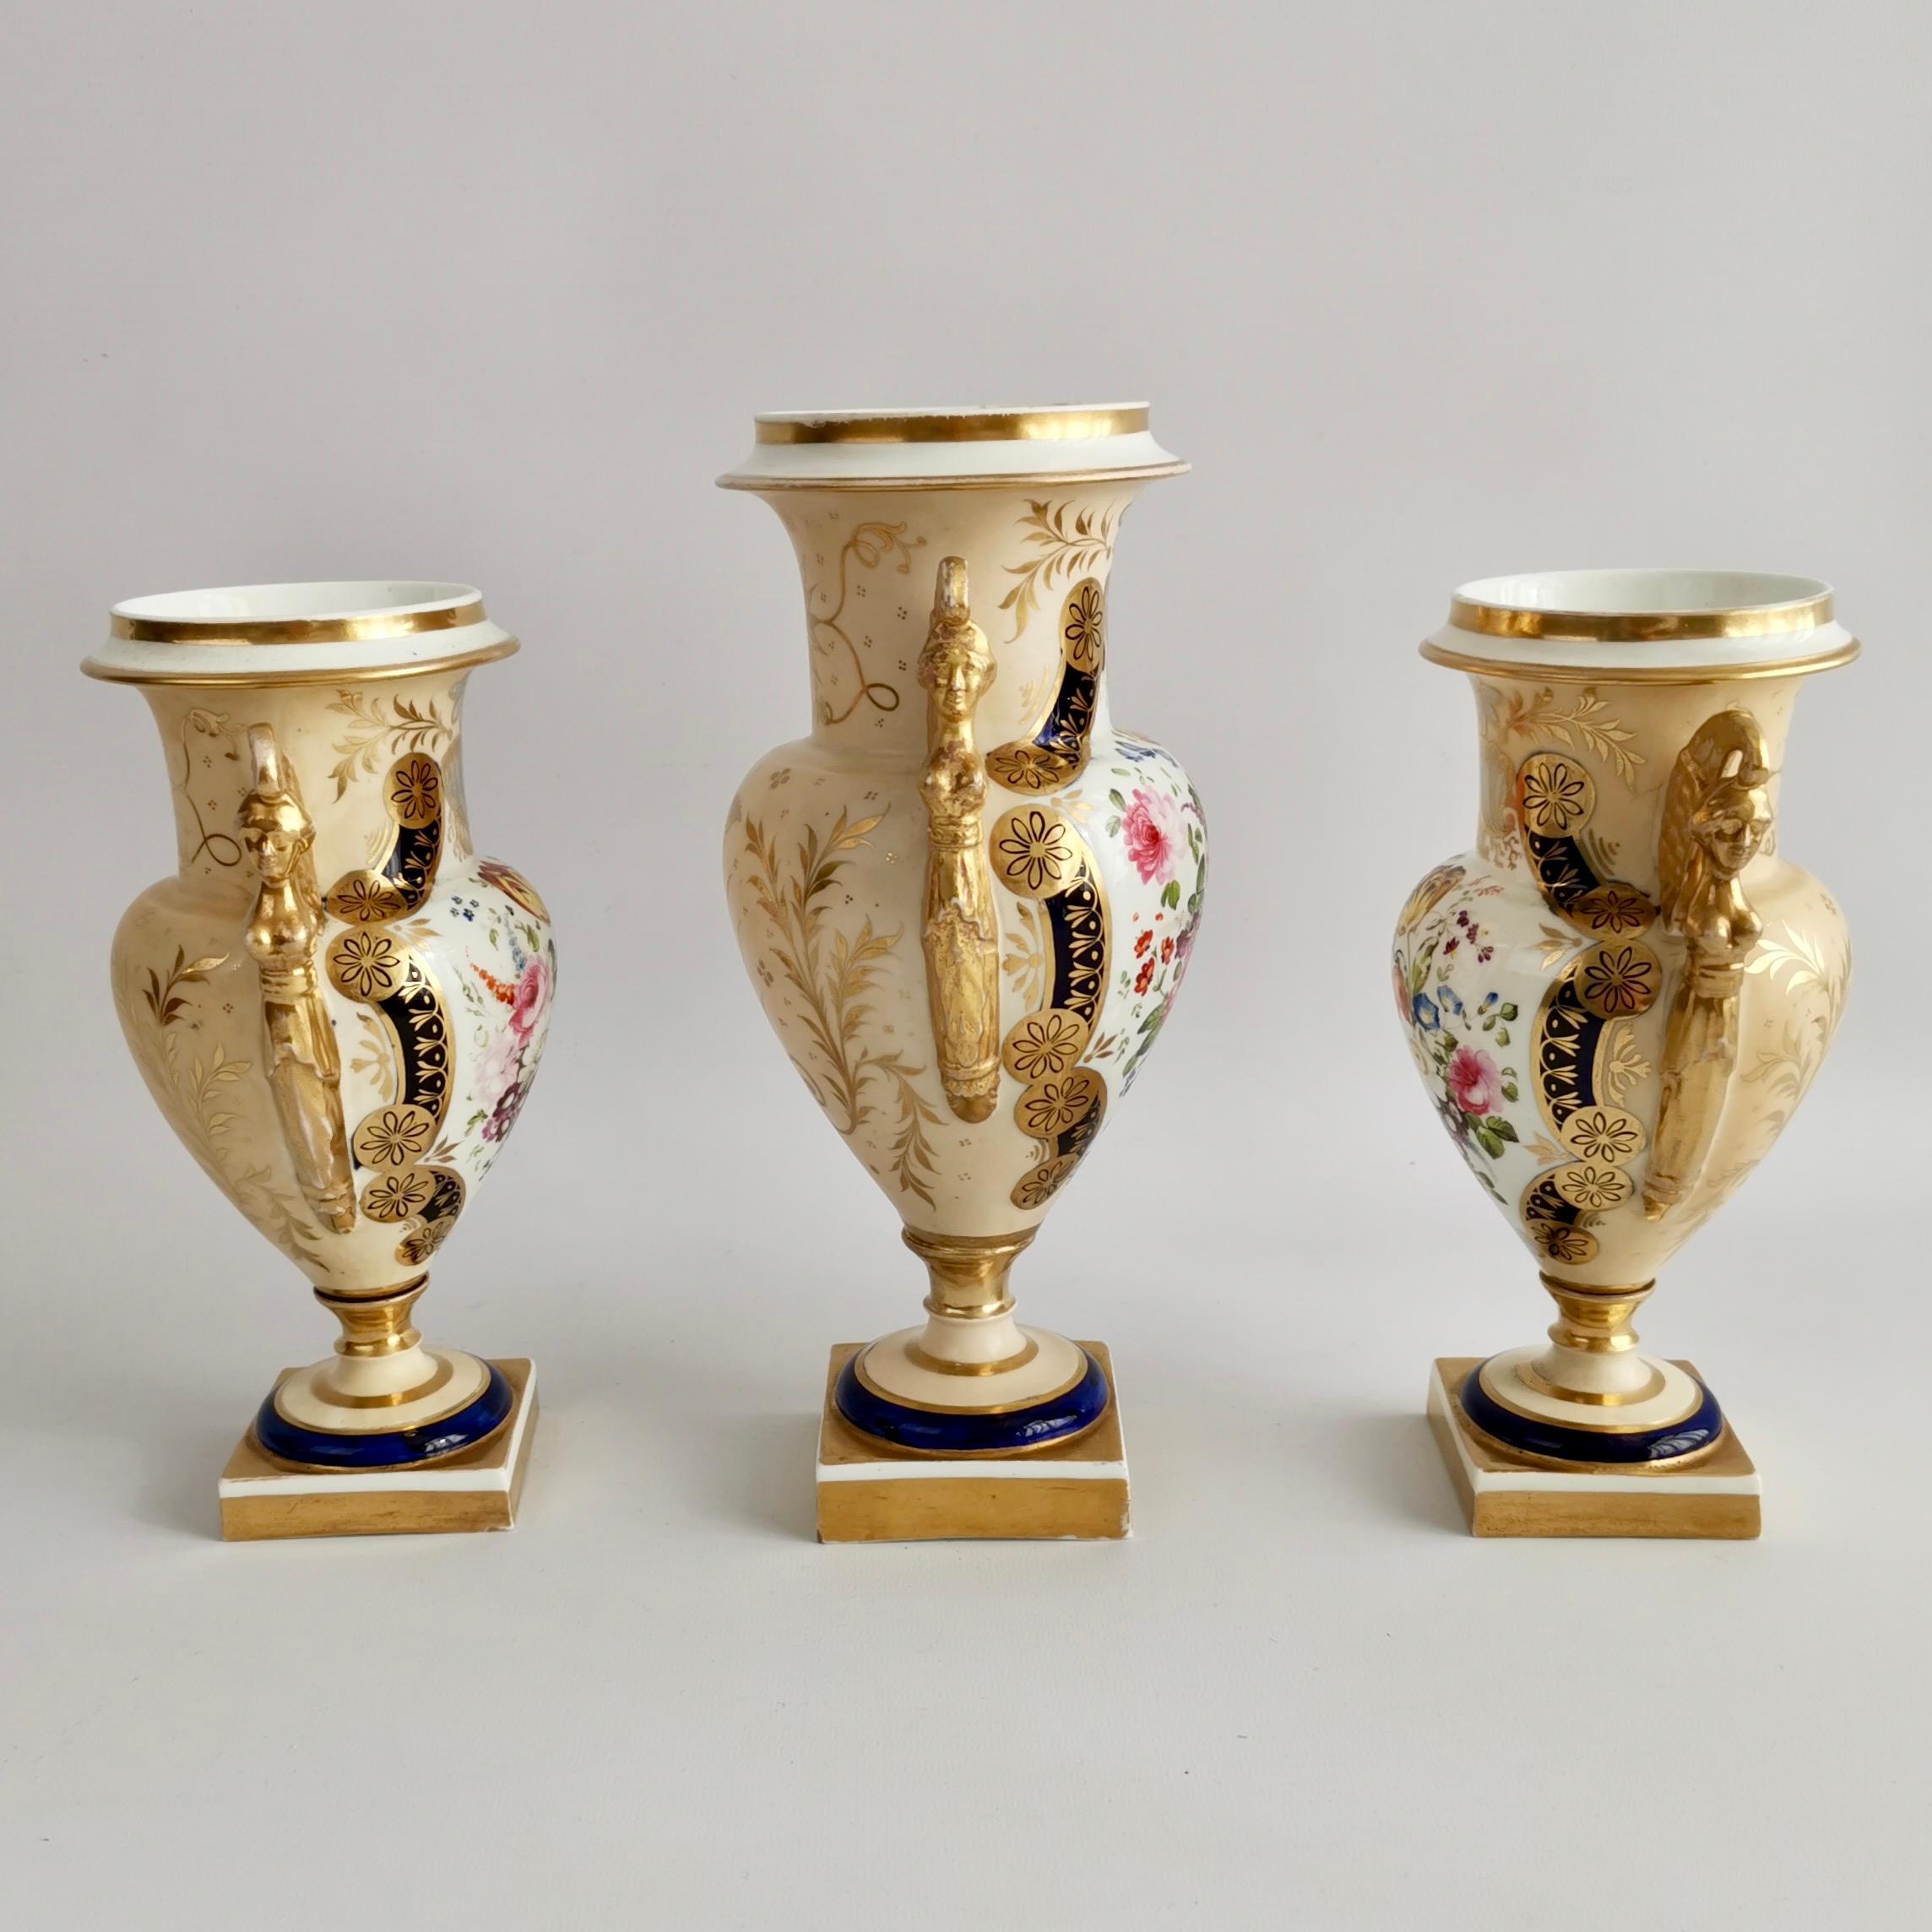 Il s'agit d'une spectaculaire garniture de trois vases fabriqués par une manufacture anglaise entre 1810 et 1815. Les vases sont réalisés dans le style Empire français avec des poignées en forme de cariatides égyptiennes fortement dorées, des